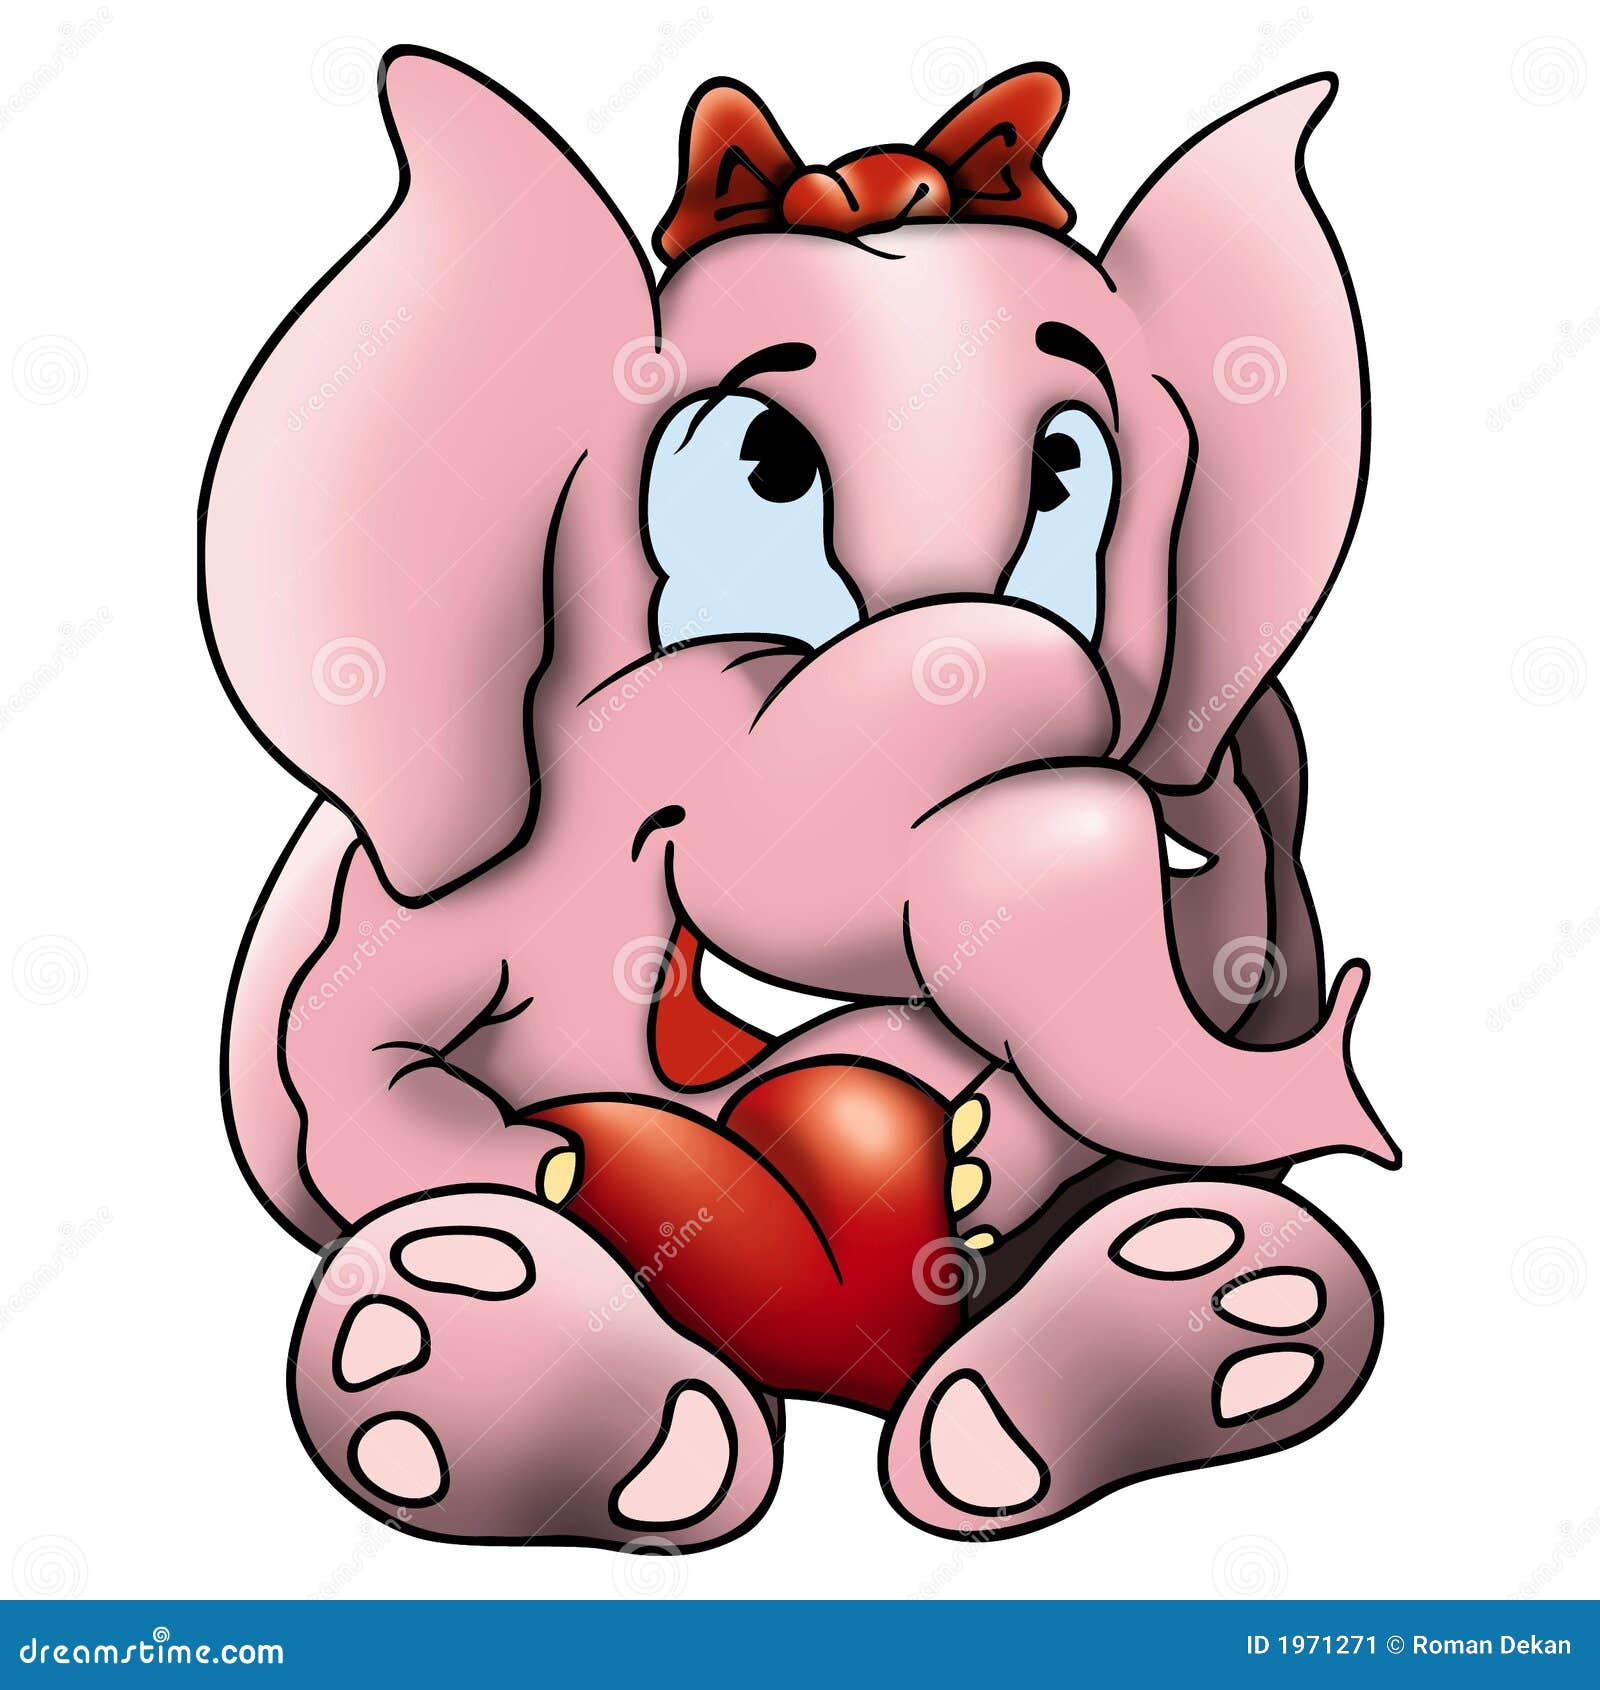 amorous elephant